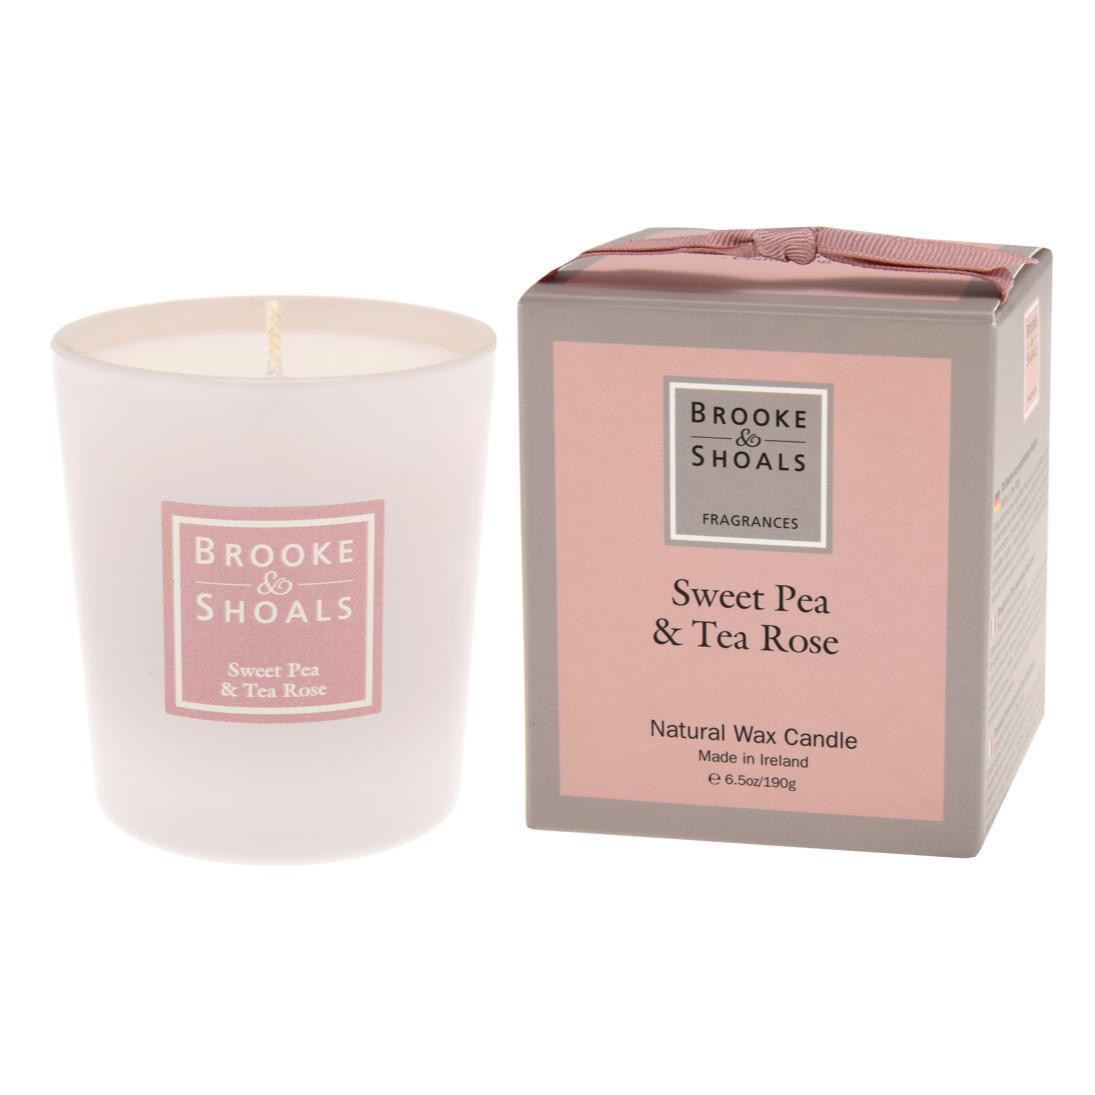 Brooke & Shoals Sweet Pea & Tea Rose Candle-Breda's Gift Shop